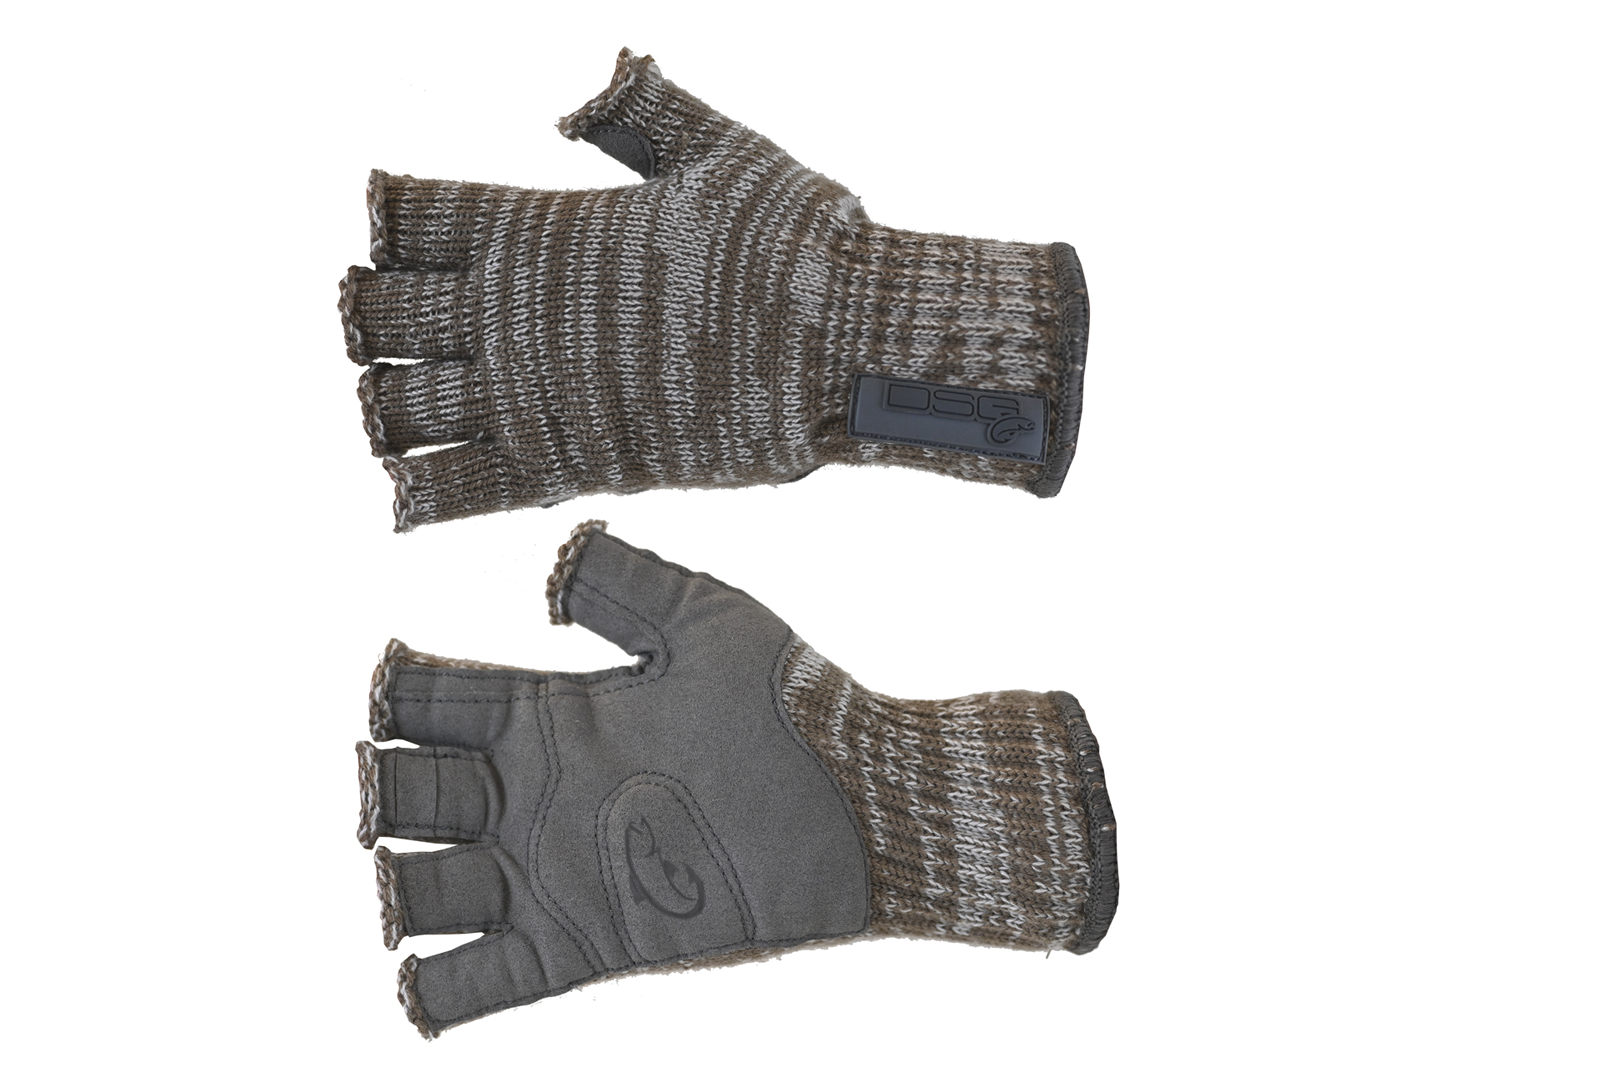 DSG Women's Merino Wool Fingerless Gloves